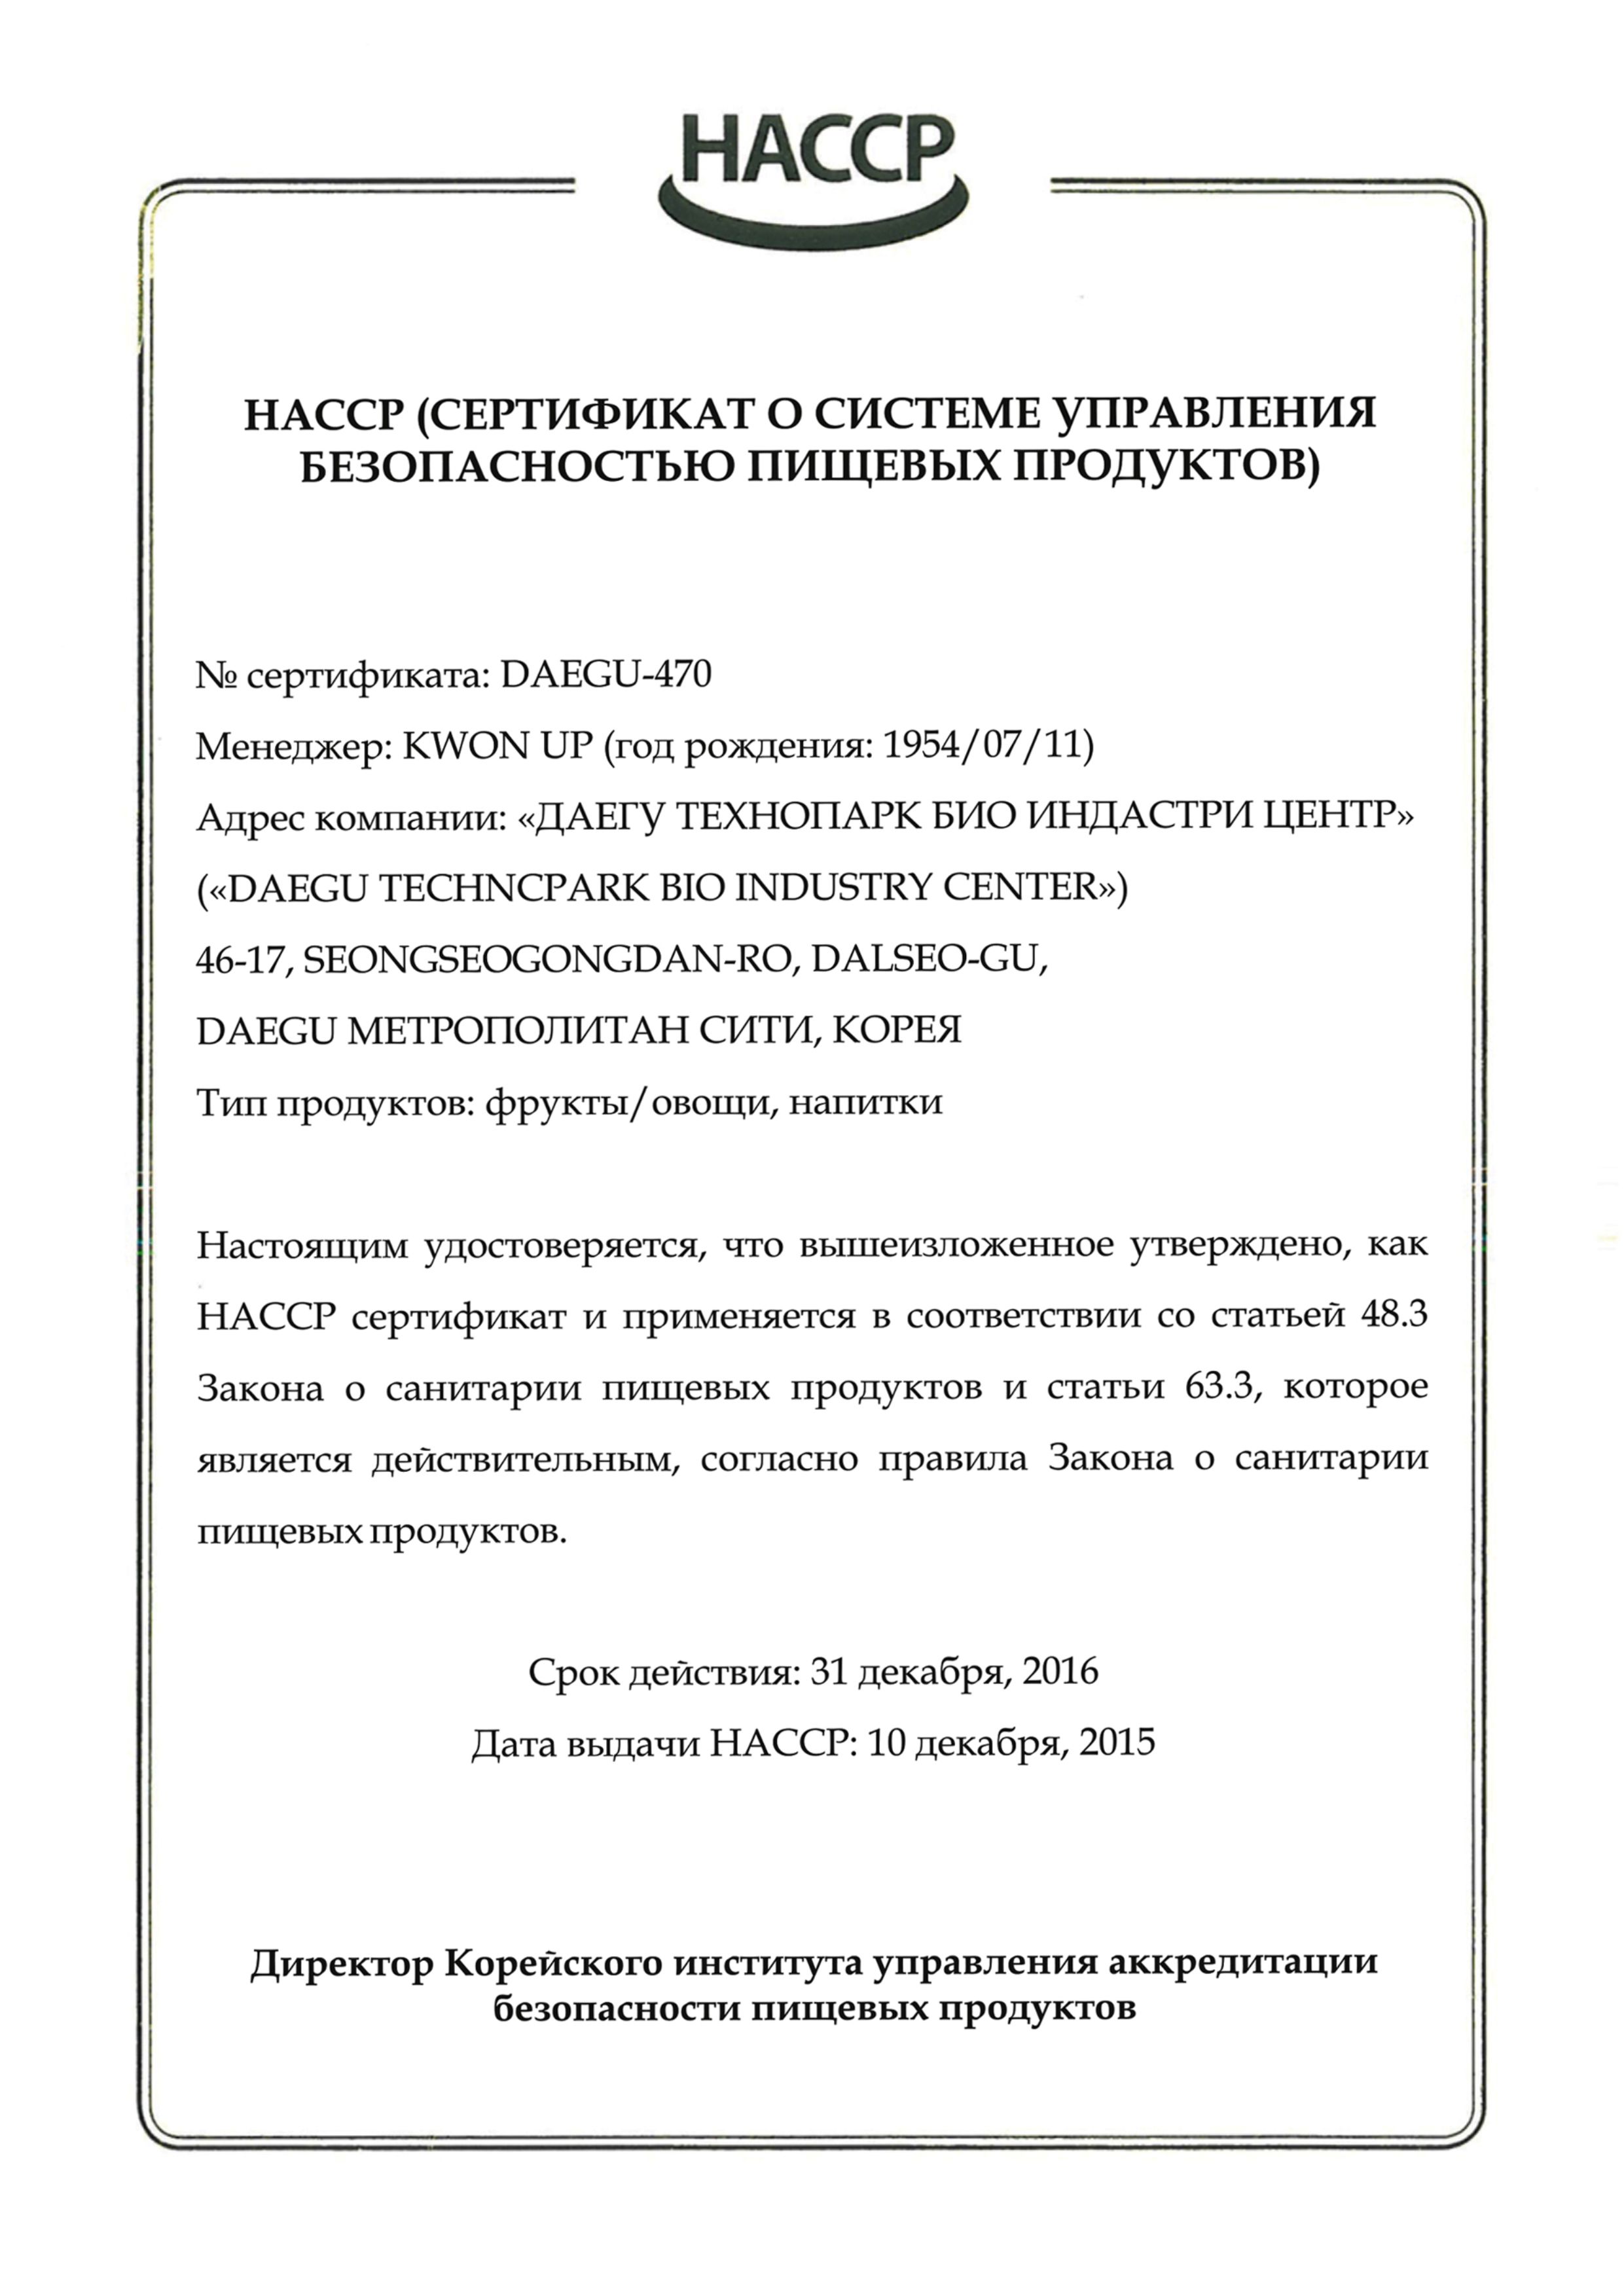 Сертификат HACCP DAEGU на русском языке